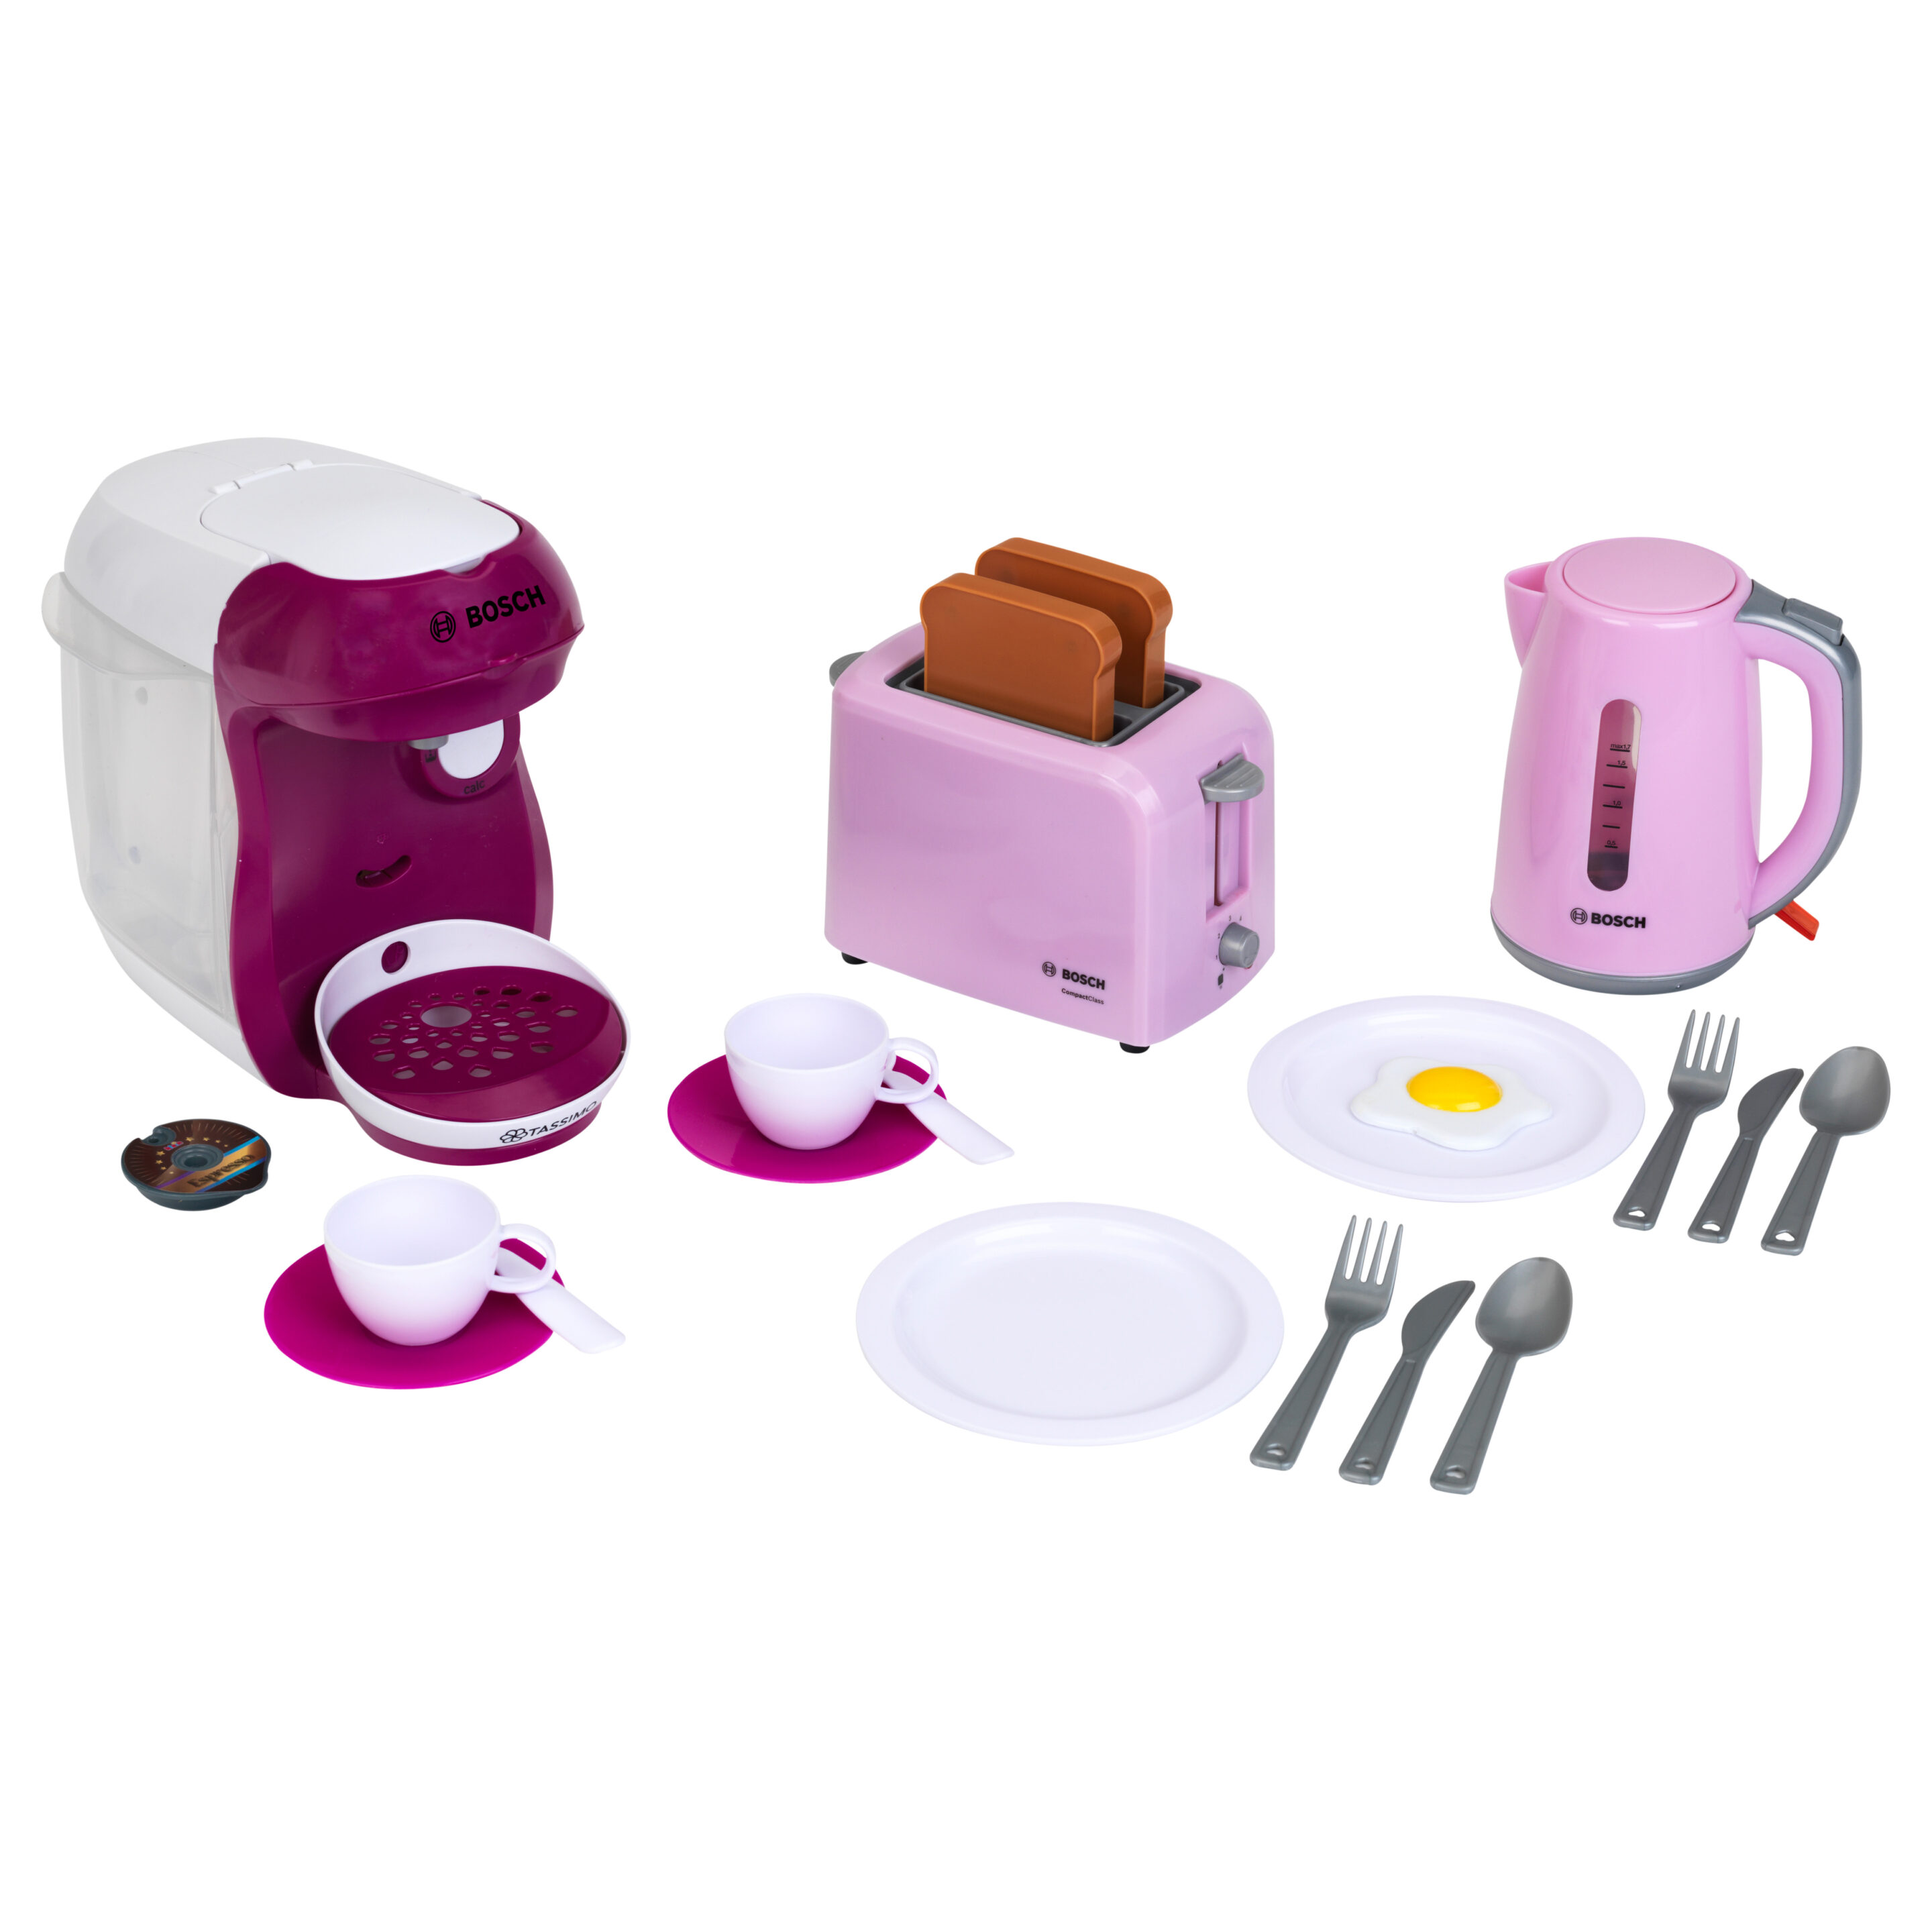 Bosch - Frühstücksset, pink, groß